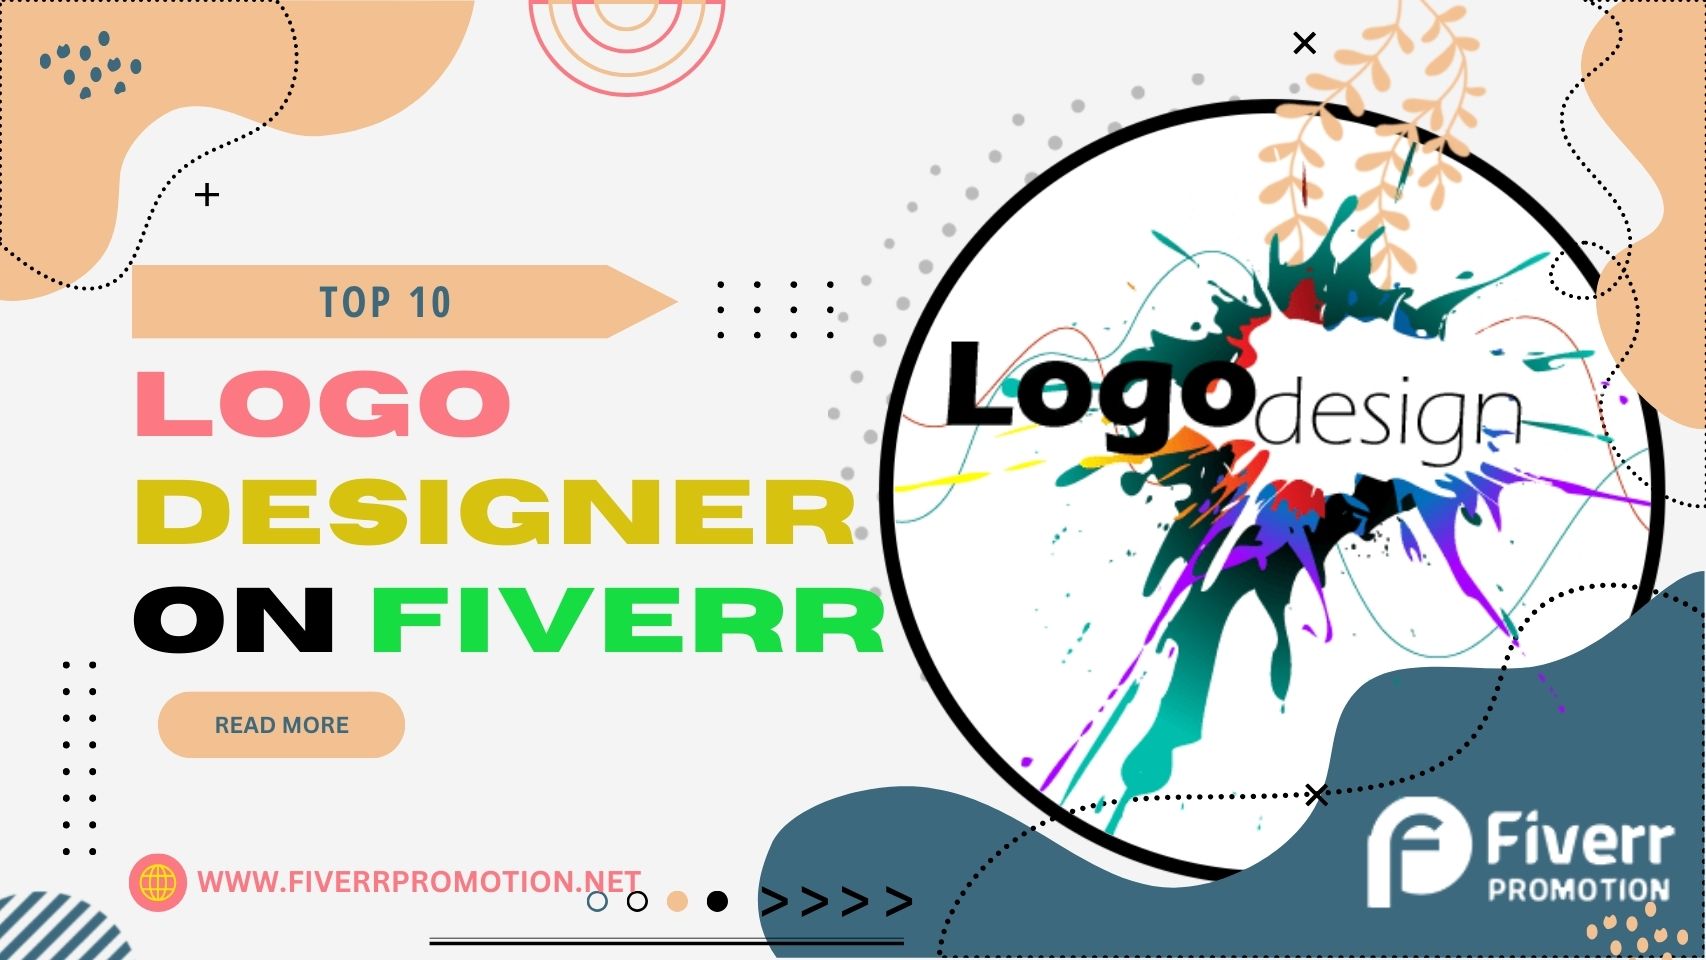 Top 10 Logo Designer on Fiverr